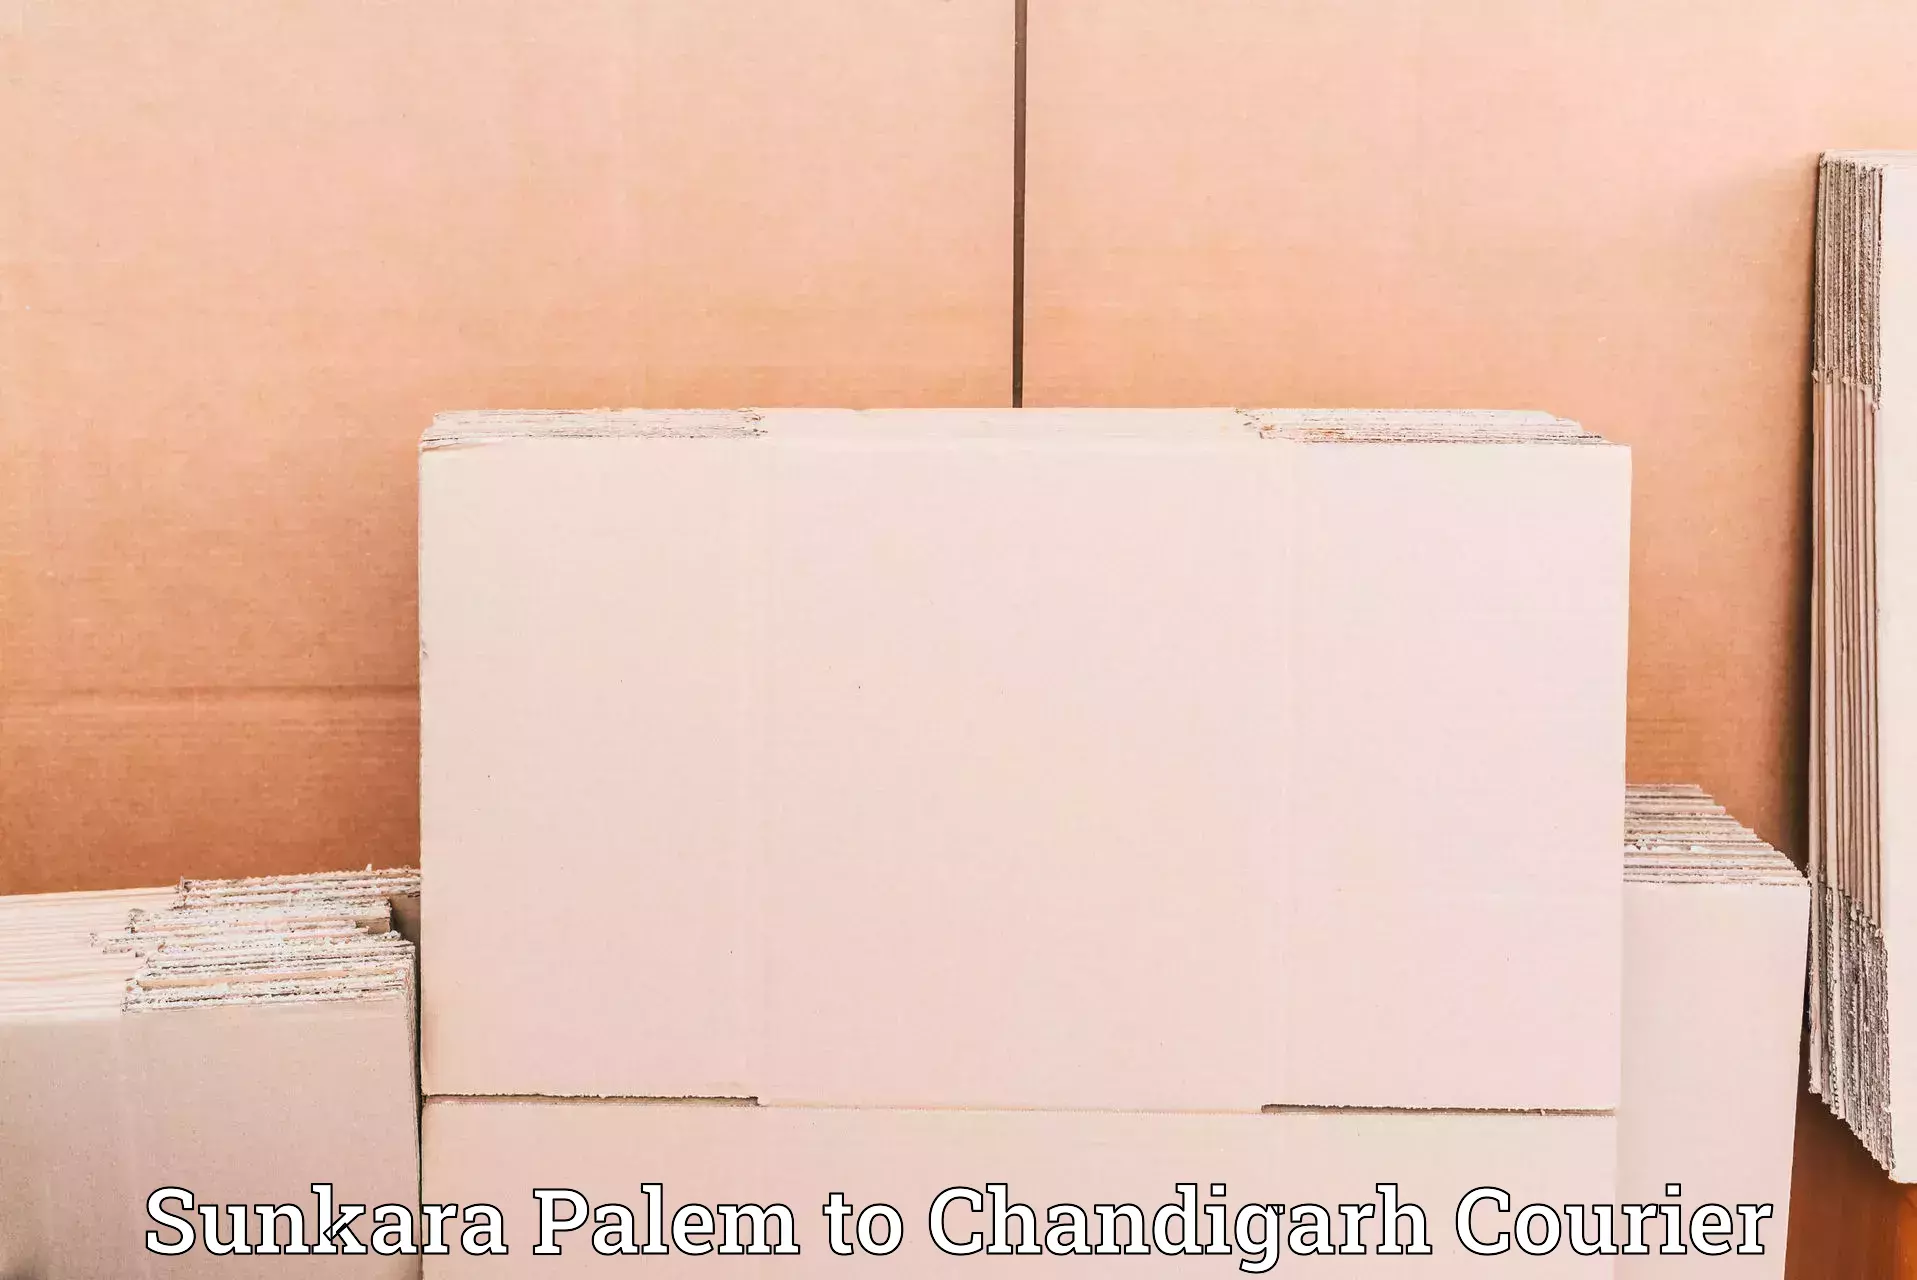 Next-generation courier services Sunkara Palem to Chandigarh